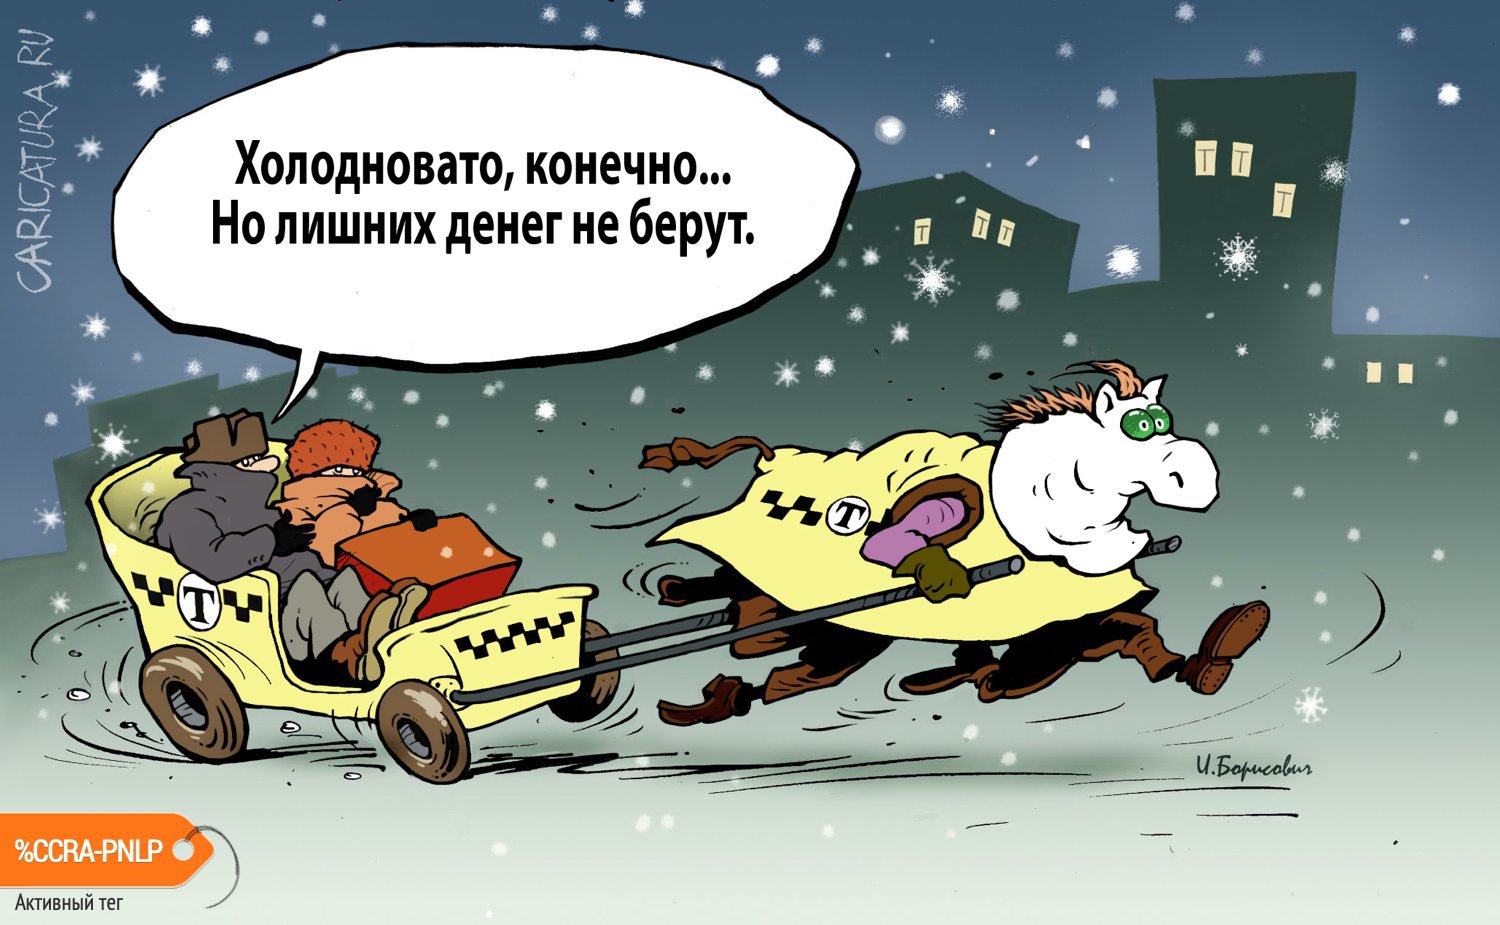 Карикатура "Такси", Игорь Елистратов